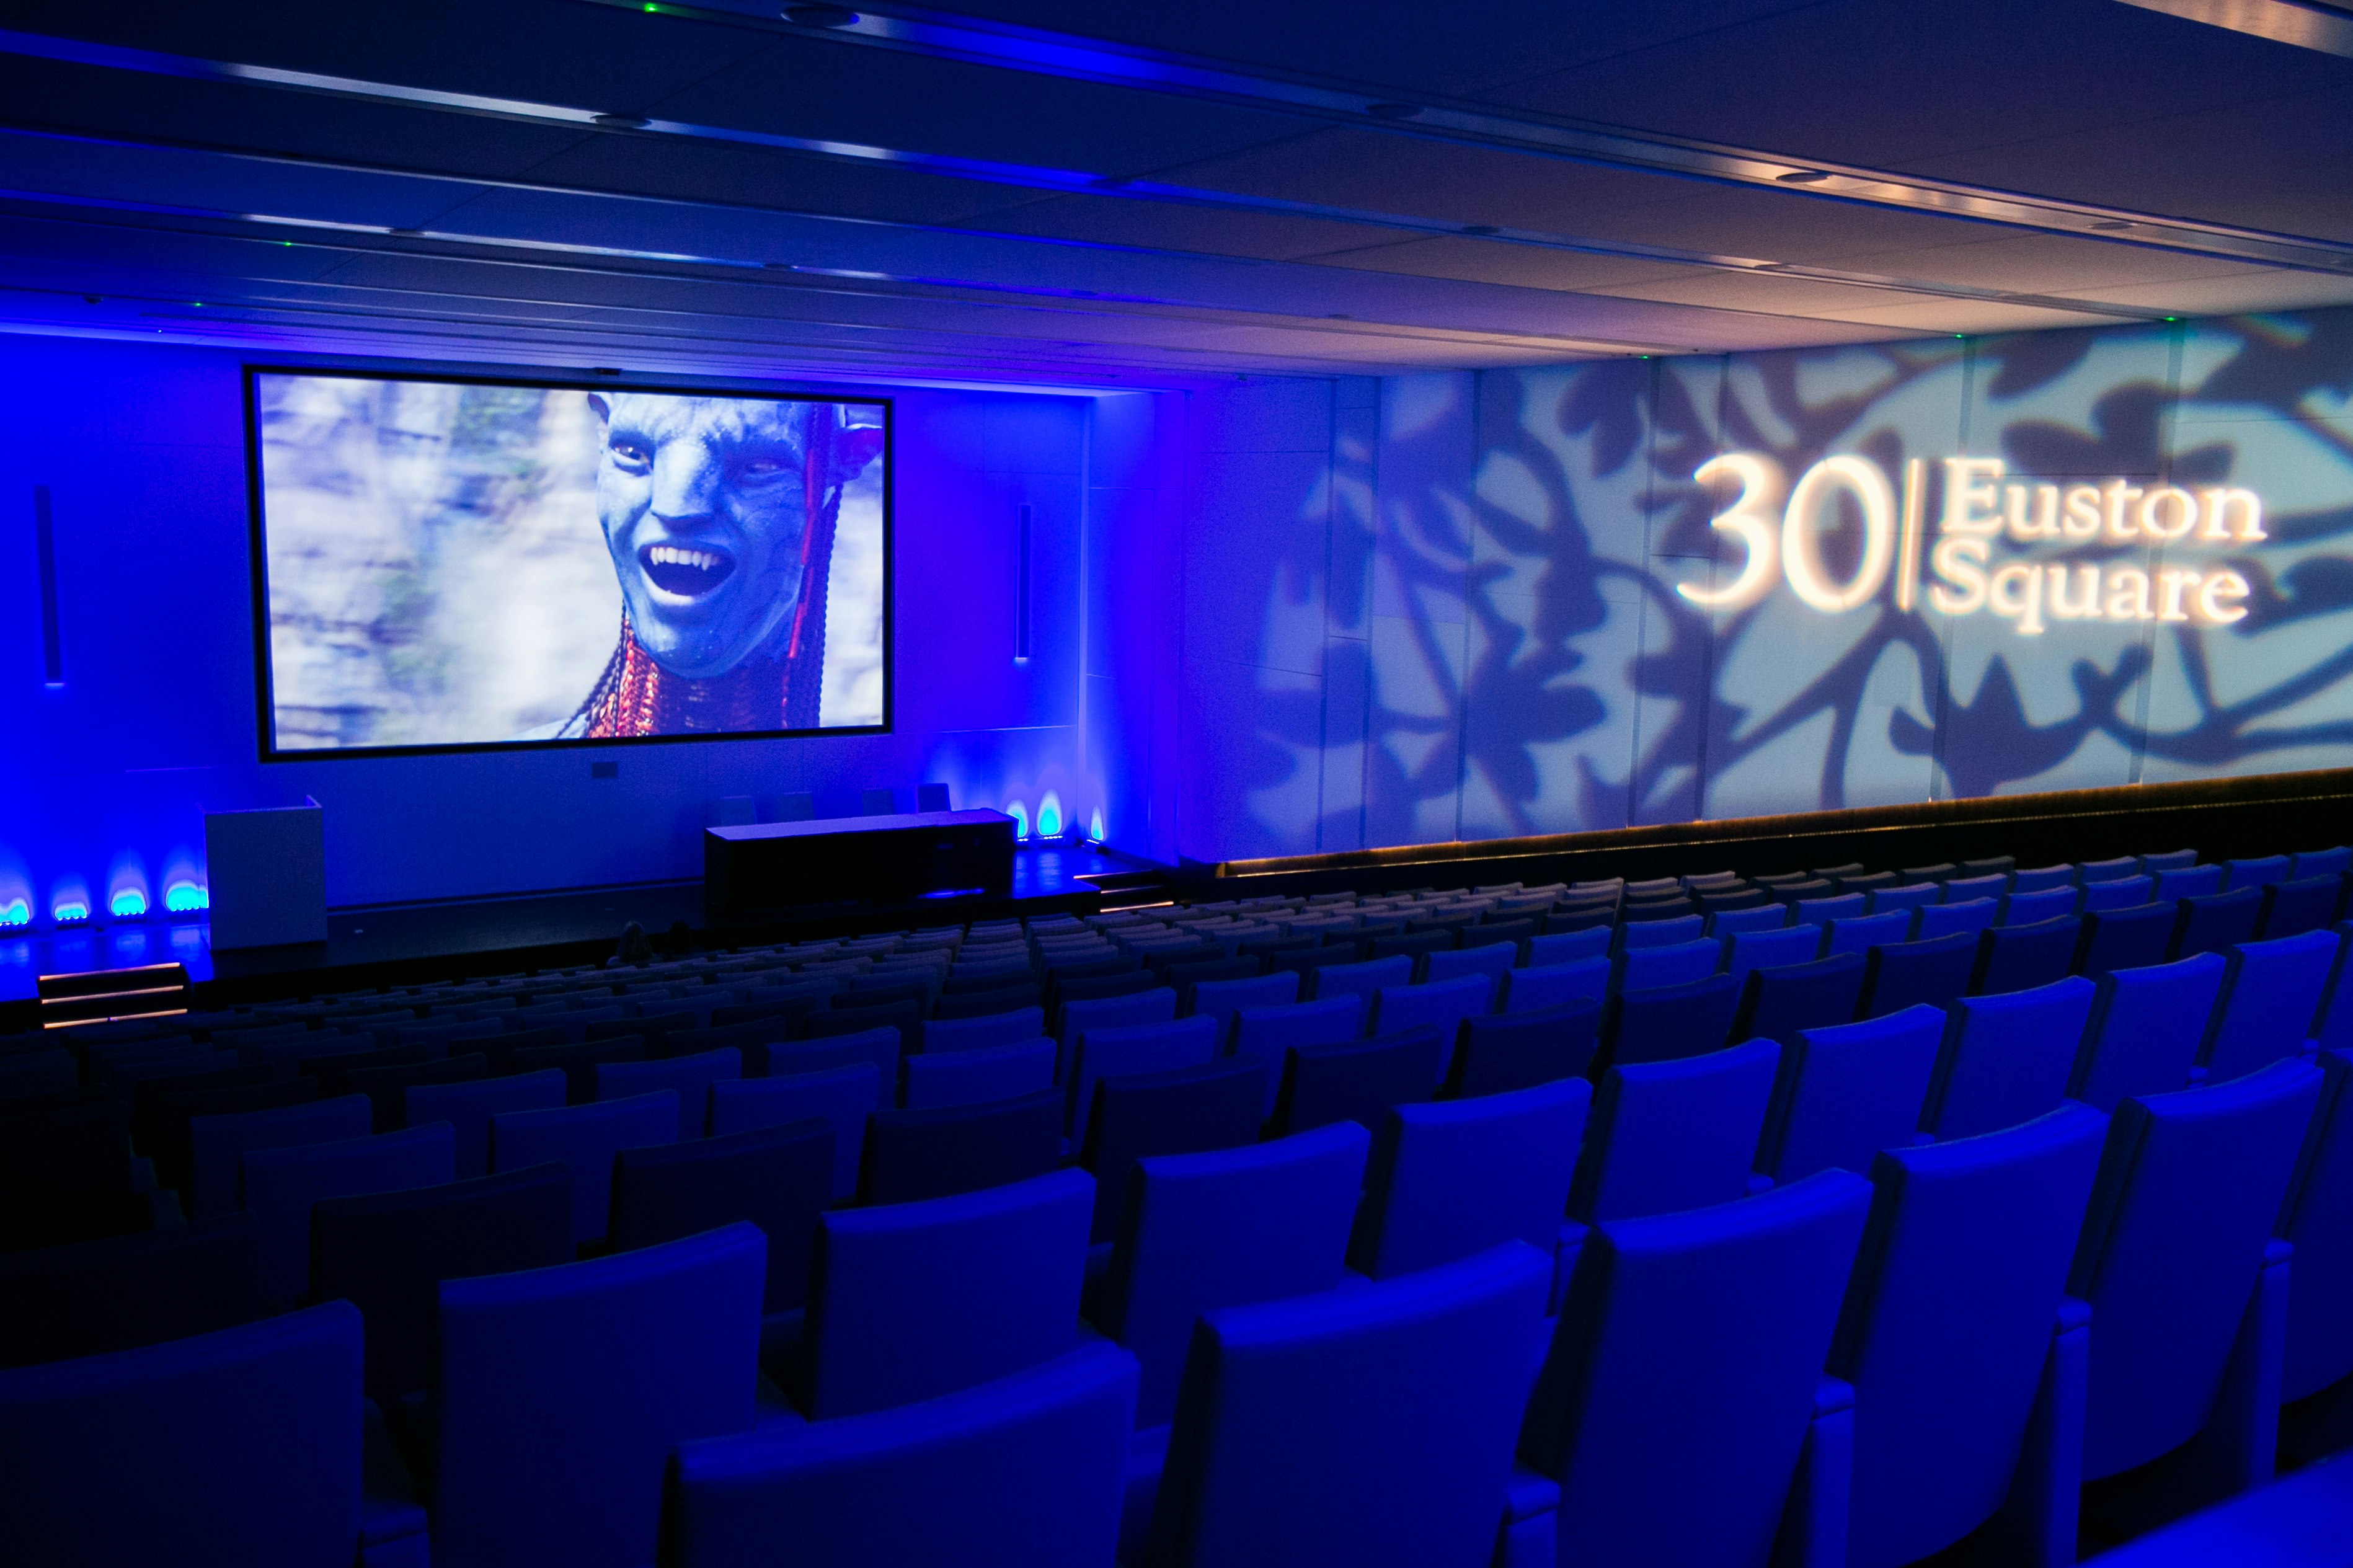 30 Euston Square - Auditorium and Exhibition Space image 8